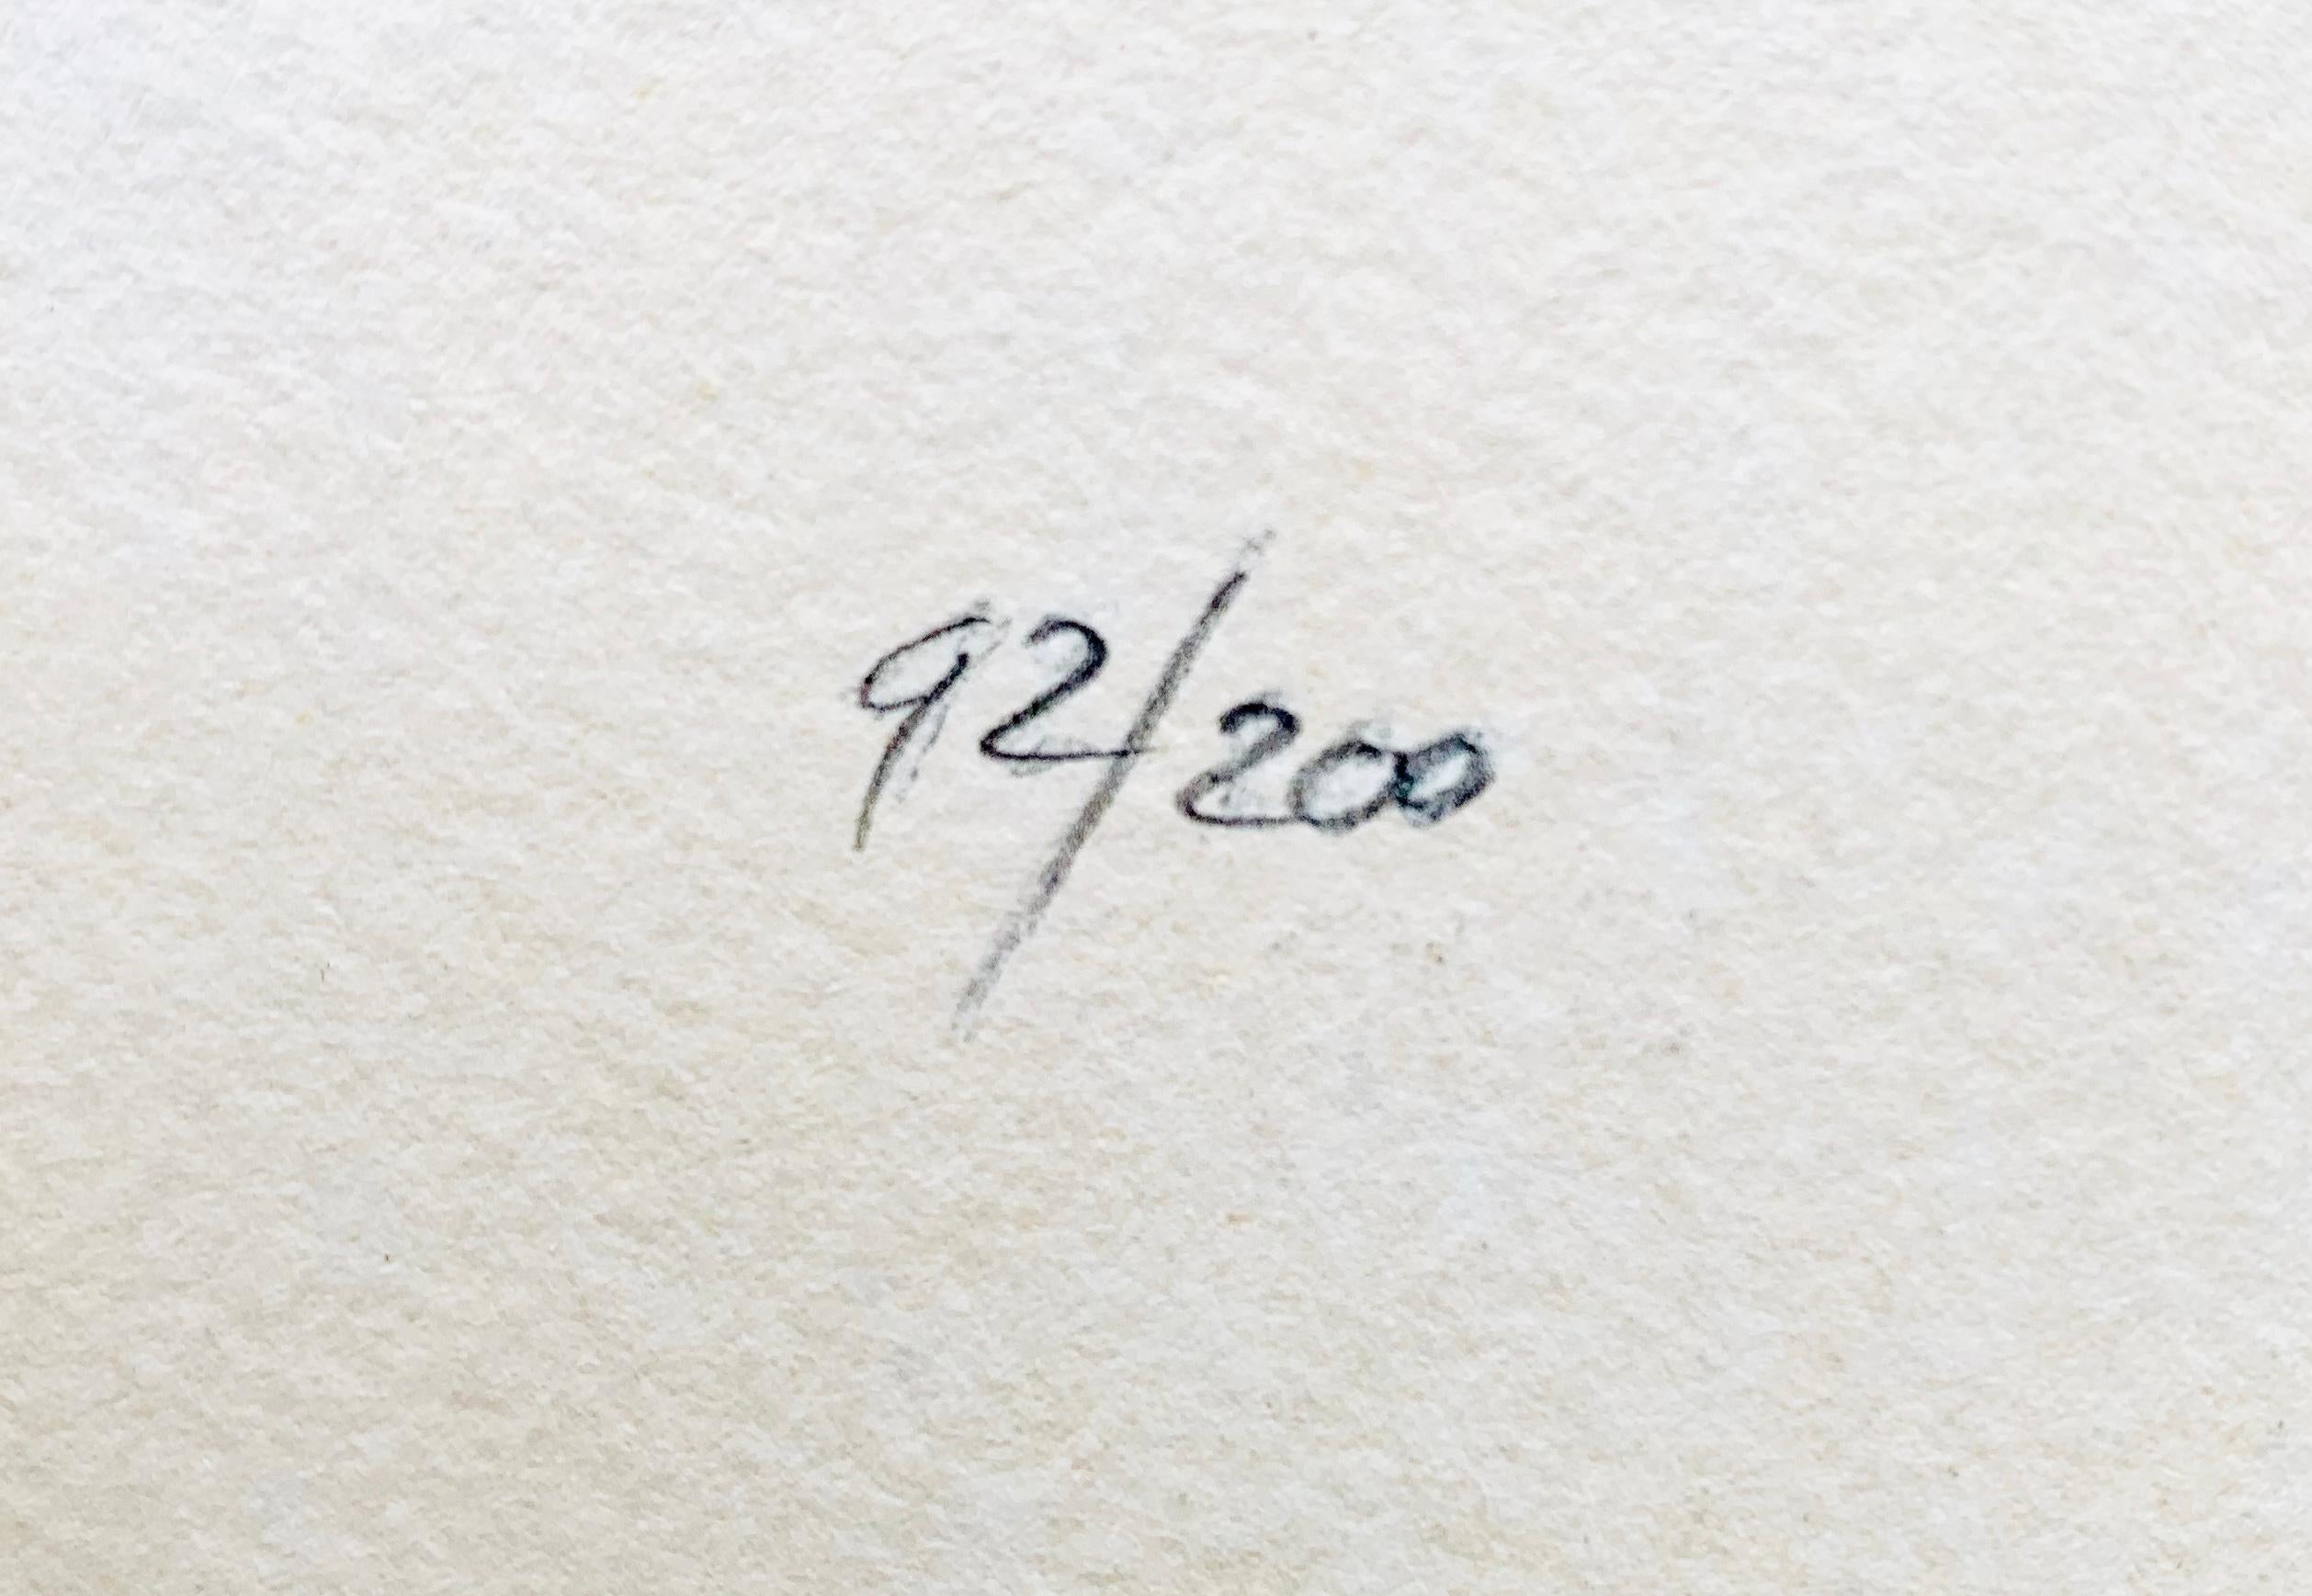 Kees van Dongen - Marcelle Leoni
Lithographie, auf Arches-Papier (mit Wasserzeichen), 1959.
Auflage: 200
Mit Kugelschreiber signiert und mit Bleistift nummeriert 92/200 (verso)
Gedruckt bei Mourlot, Paris
Papierformat: 68,0 x 47,2 cm.
Sehr gutes